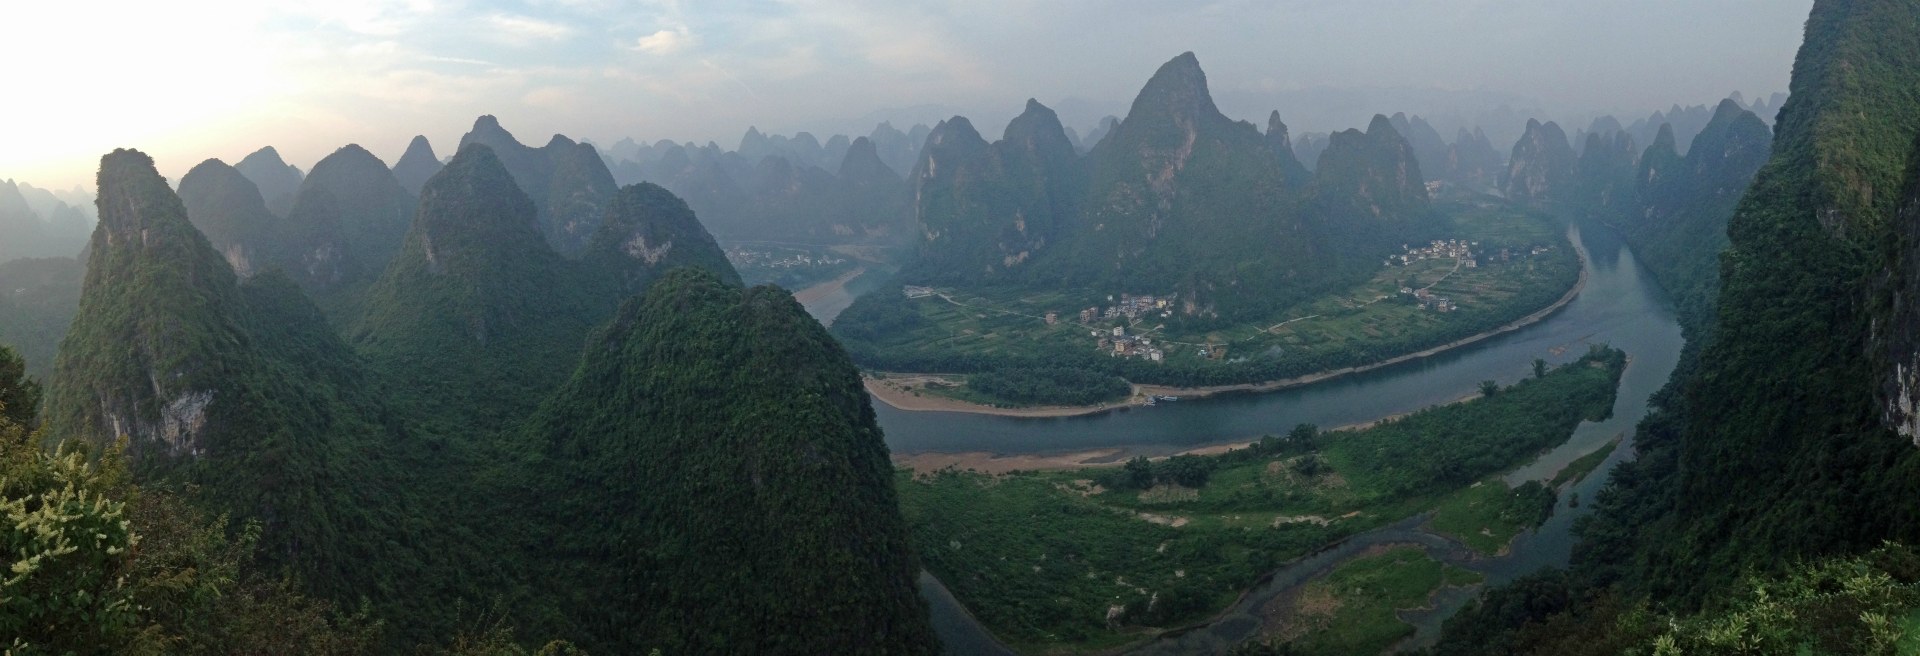 View from Xianggong Hill, Yangshuo